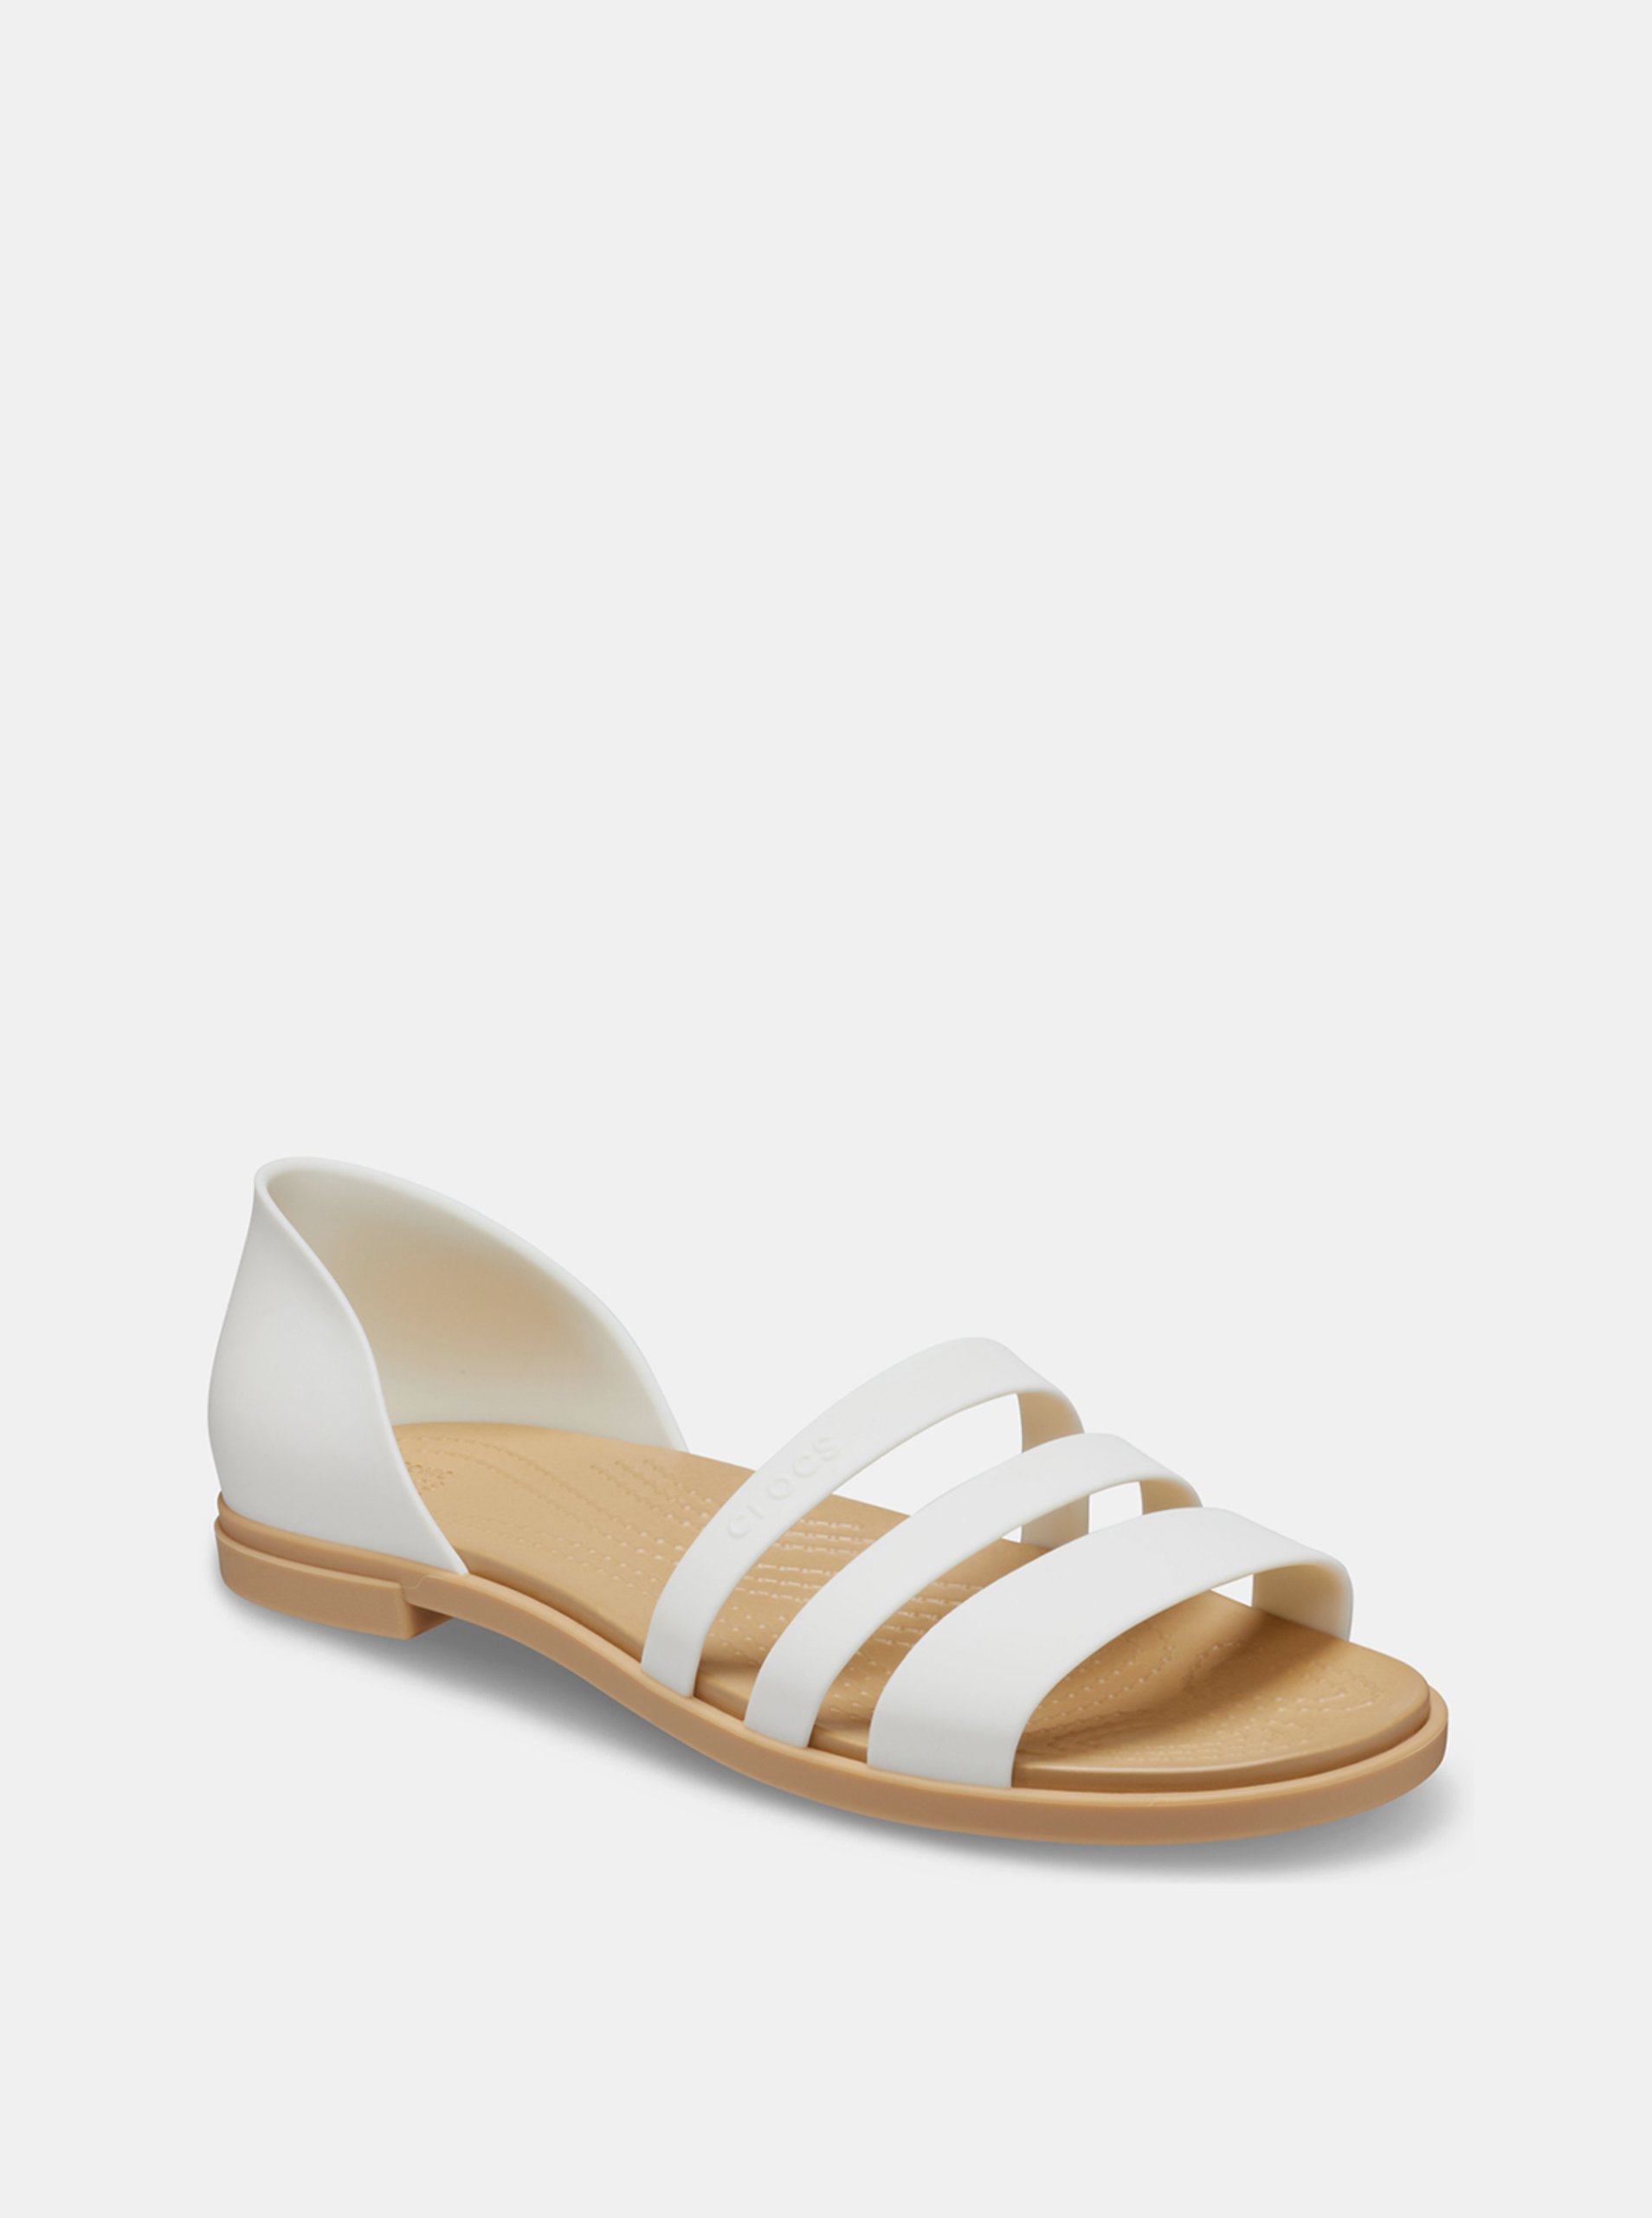 Lacno Crocs biele sandále Tulum Open Flat